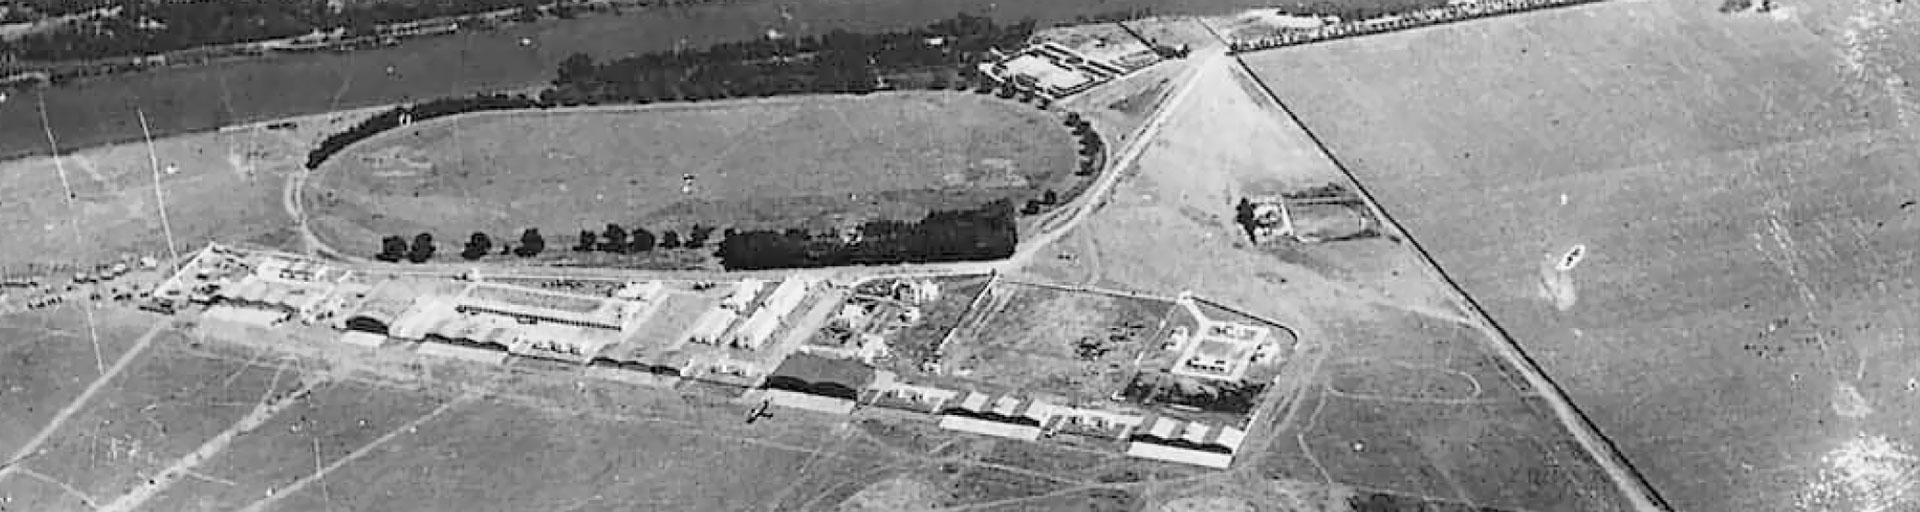 Vista histórica del aeródromo de Tablada